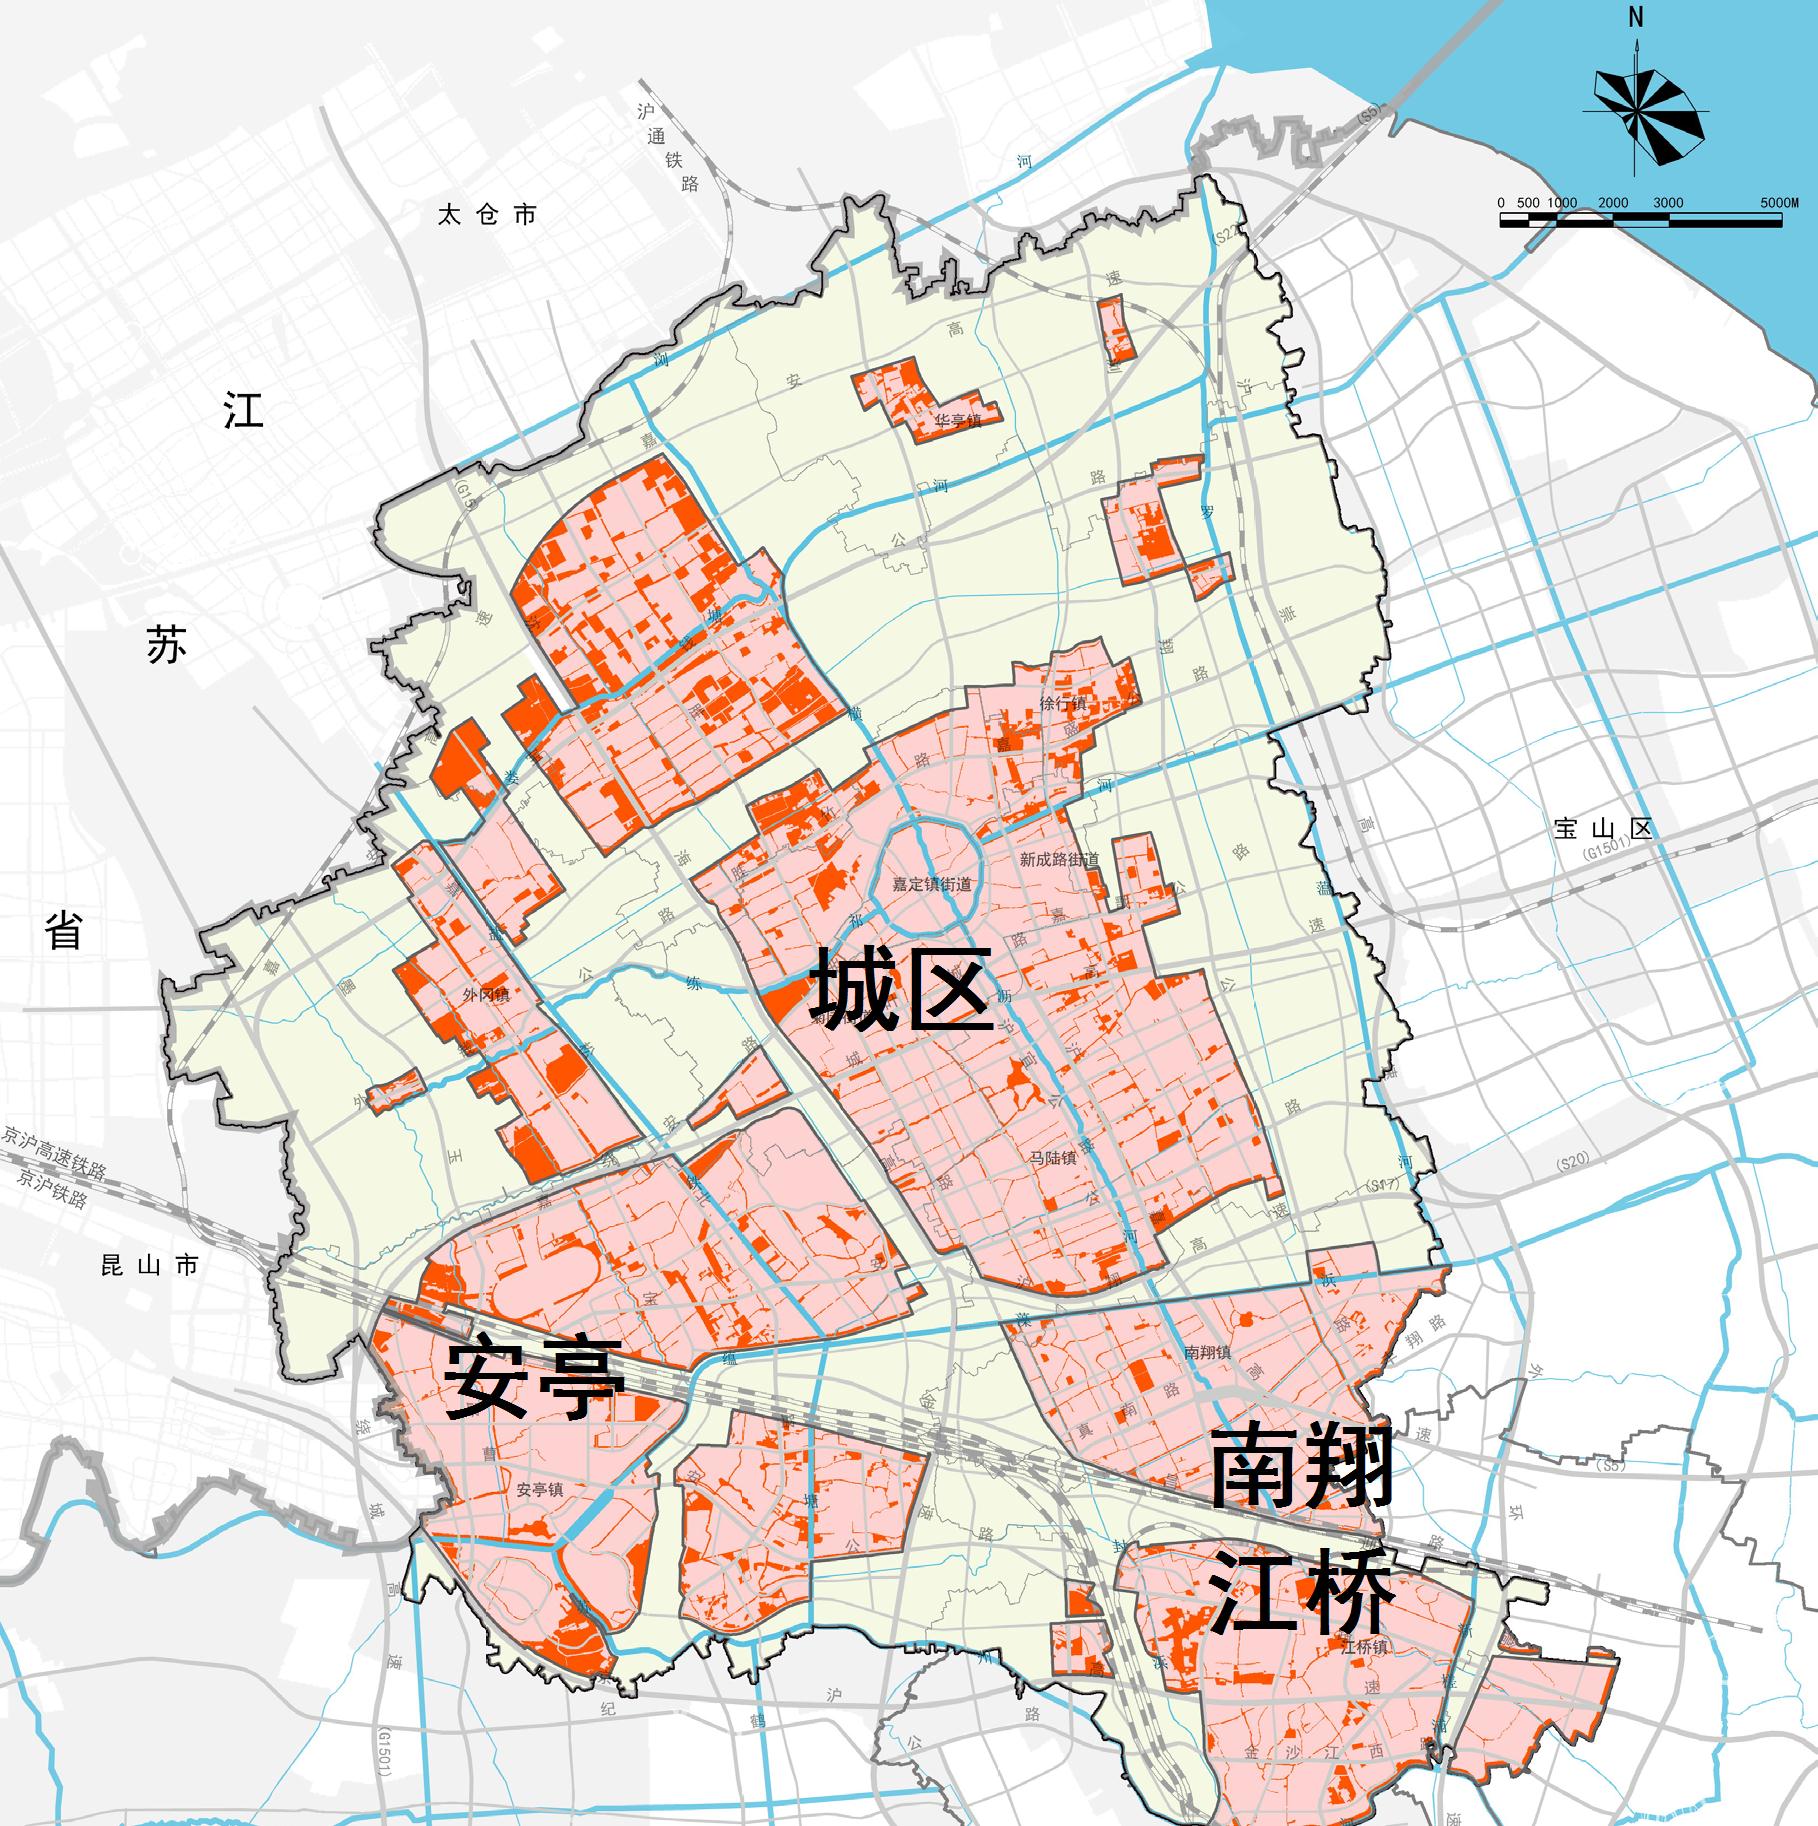 上海市嘉定区2035年总体规划获批:从郊区的发展模式转型为城区